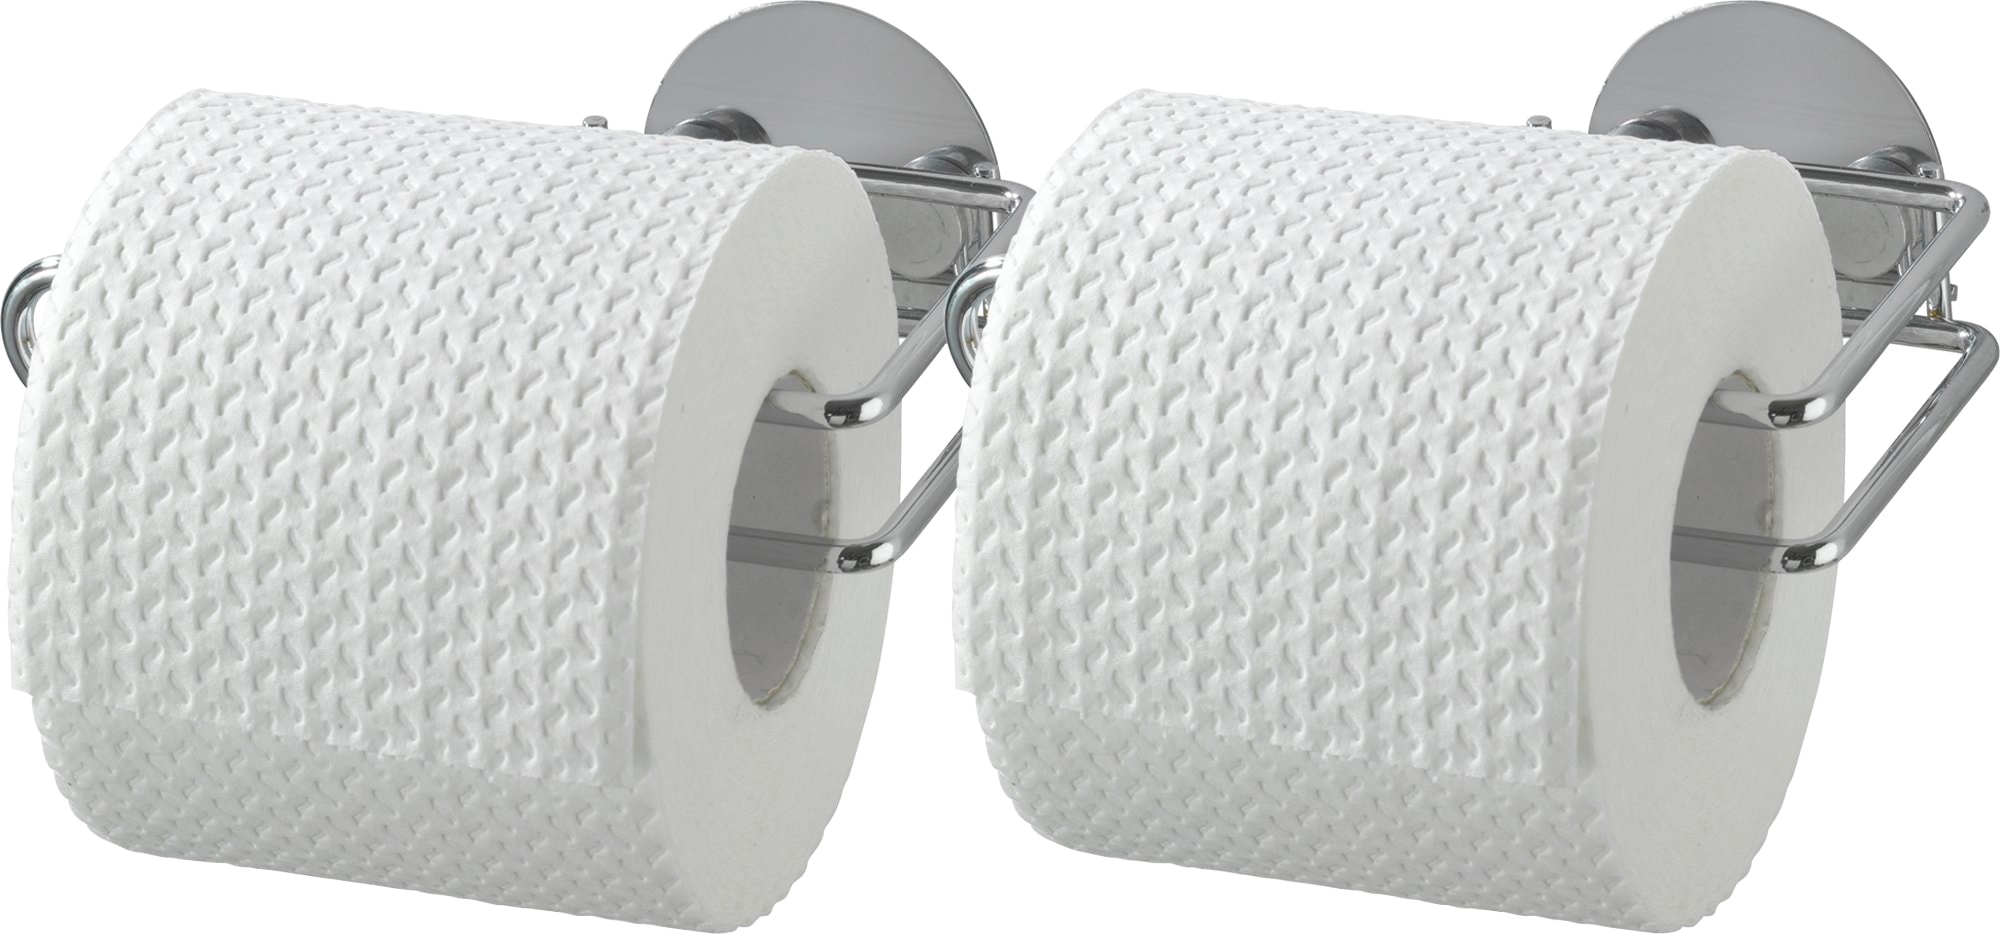 WENKO Toilettenpapierhalter kaufen »Turbo-Loc®« online